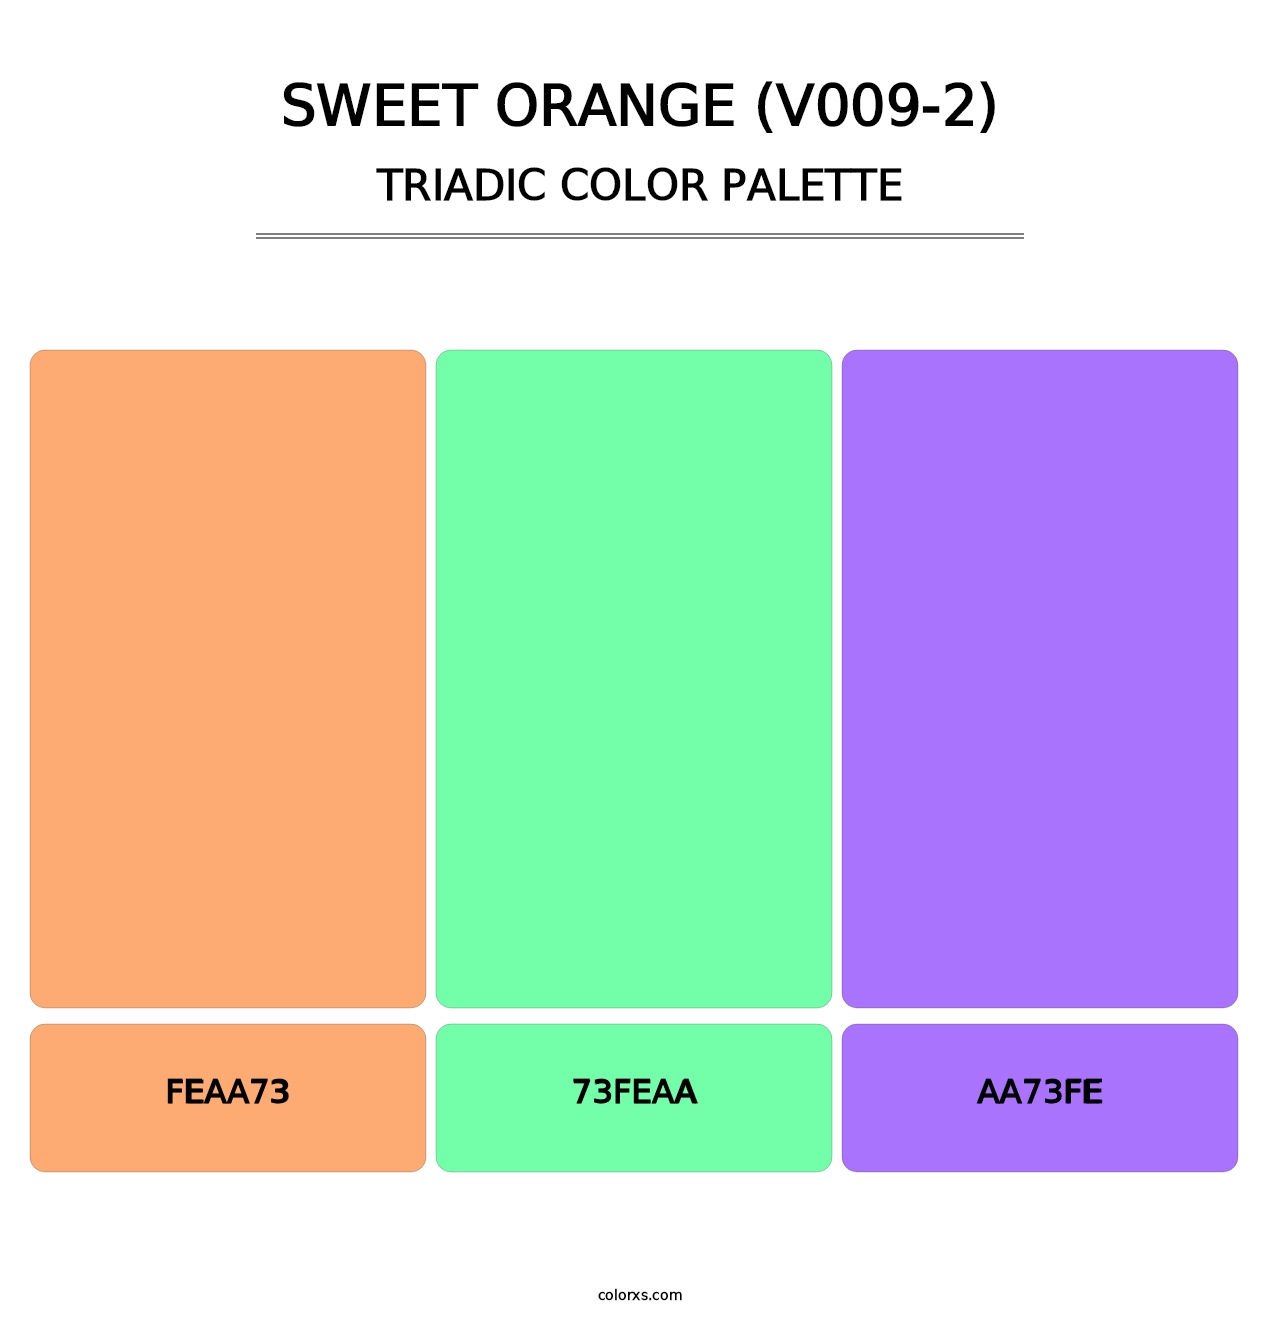 Sweet Orange (V009-2) - Triadic Color Palette